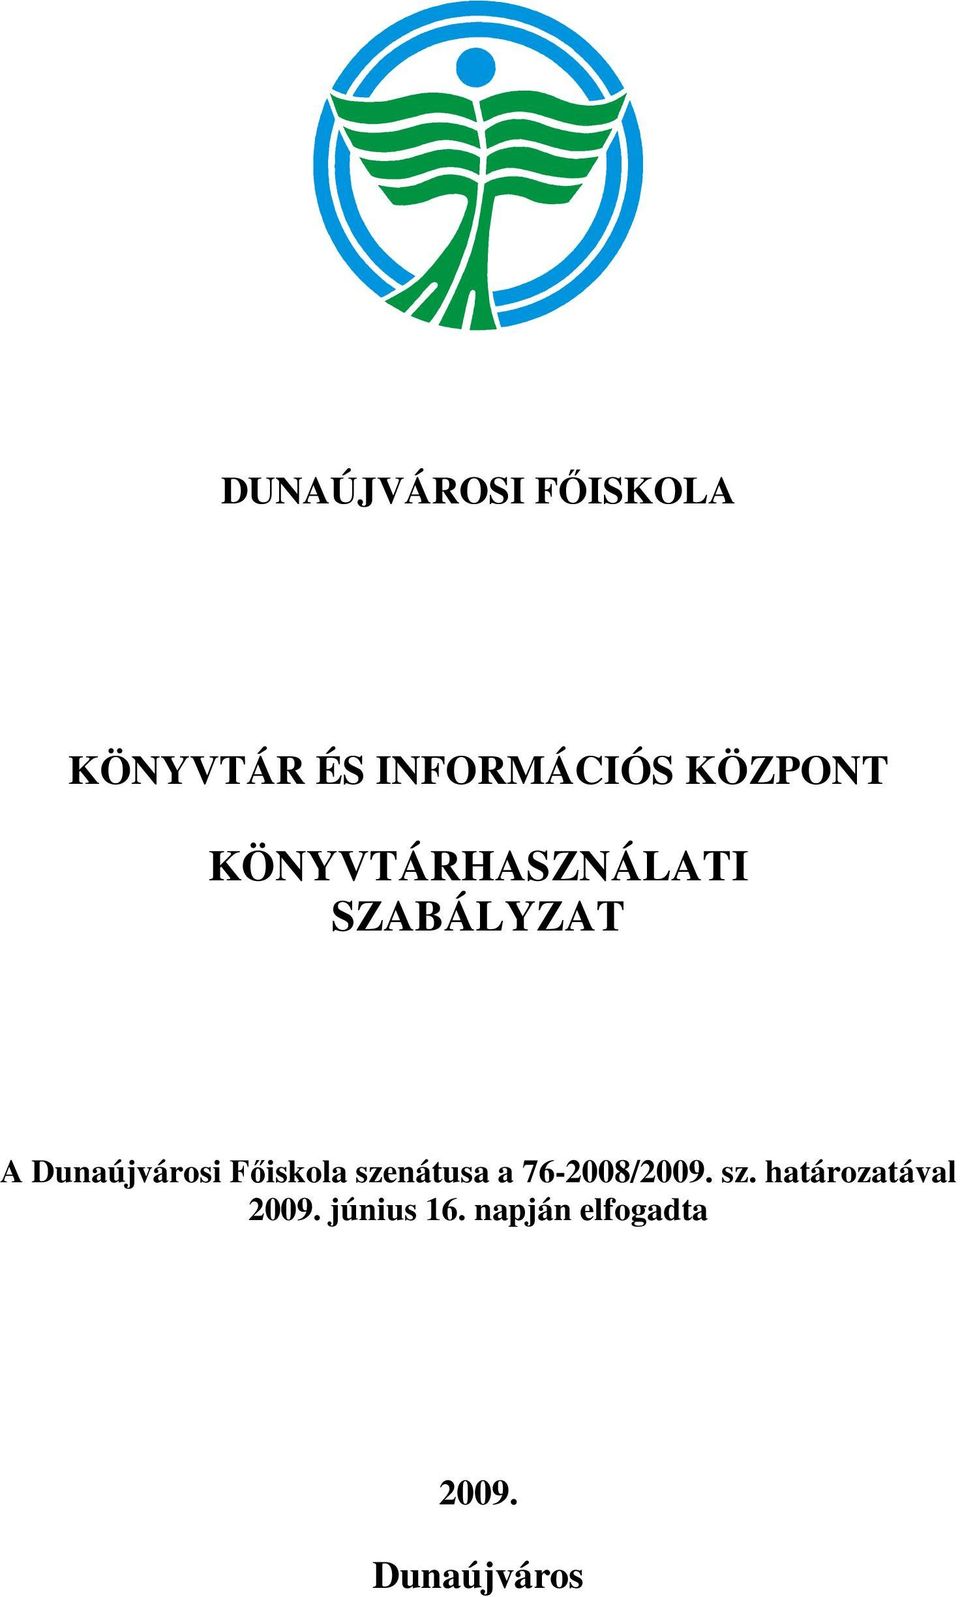 Dunaújvárosi Főiskola szenátusa a 76-2008/2009. sz. határozatával 2009.